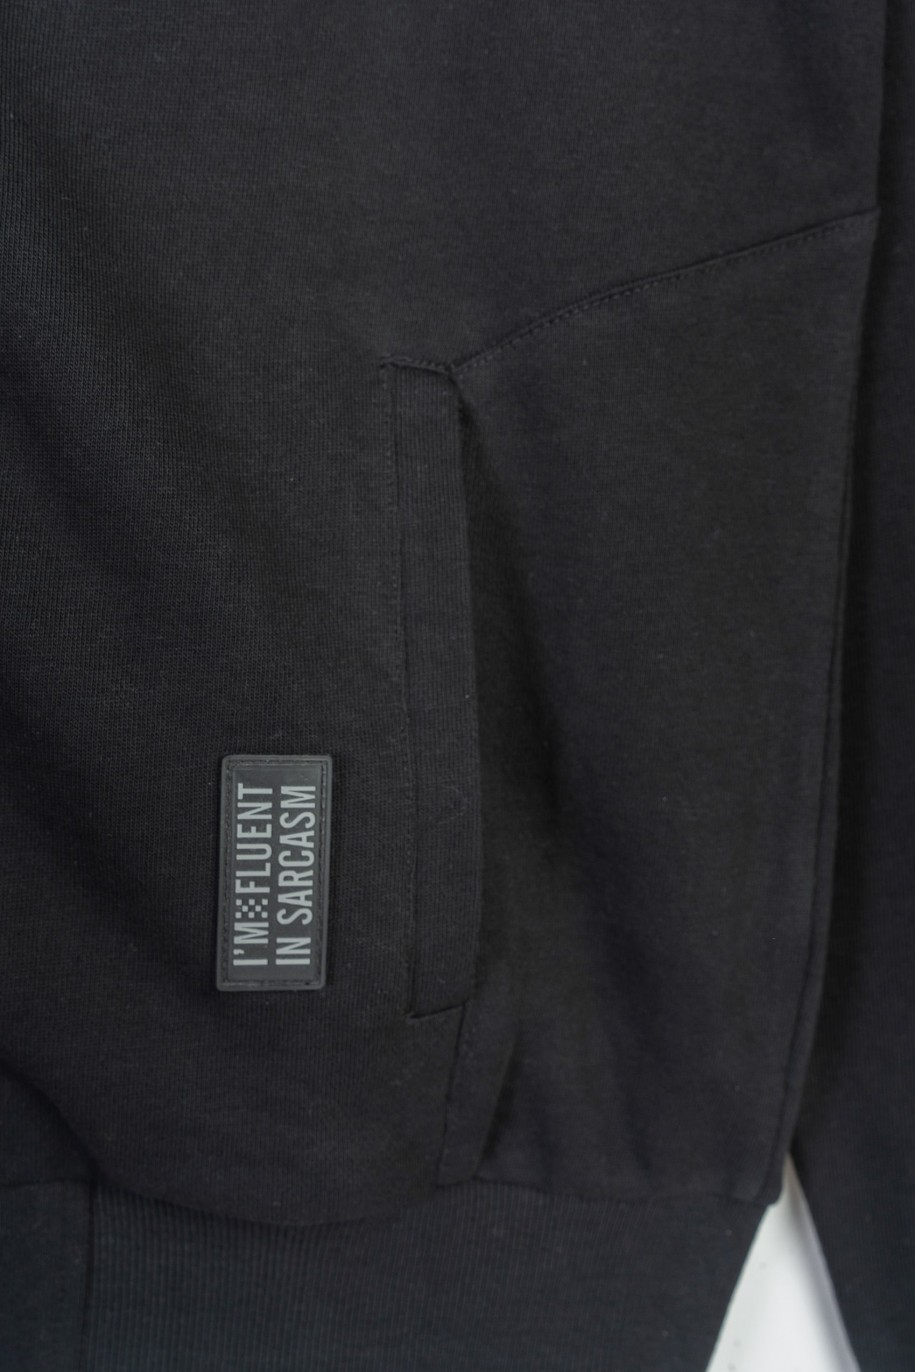 Czarna bluza bomberka z minimalistycznymi nadrukami zapiana na zamek - 47470